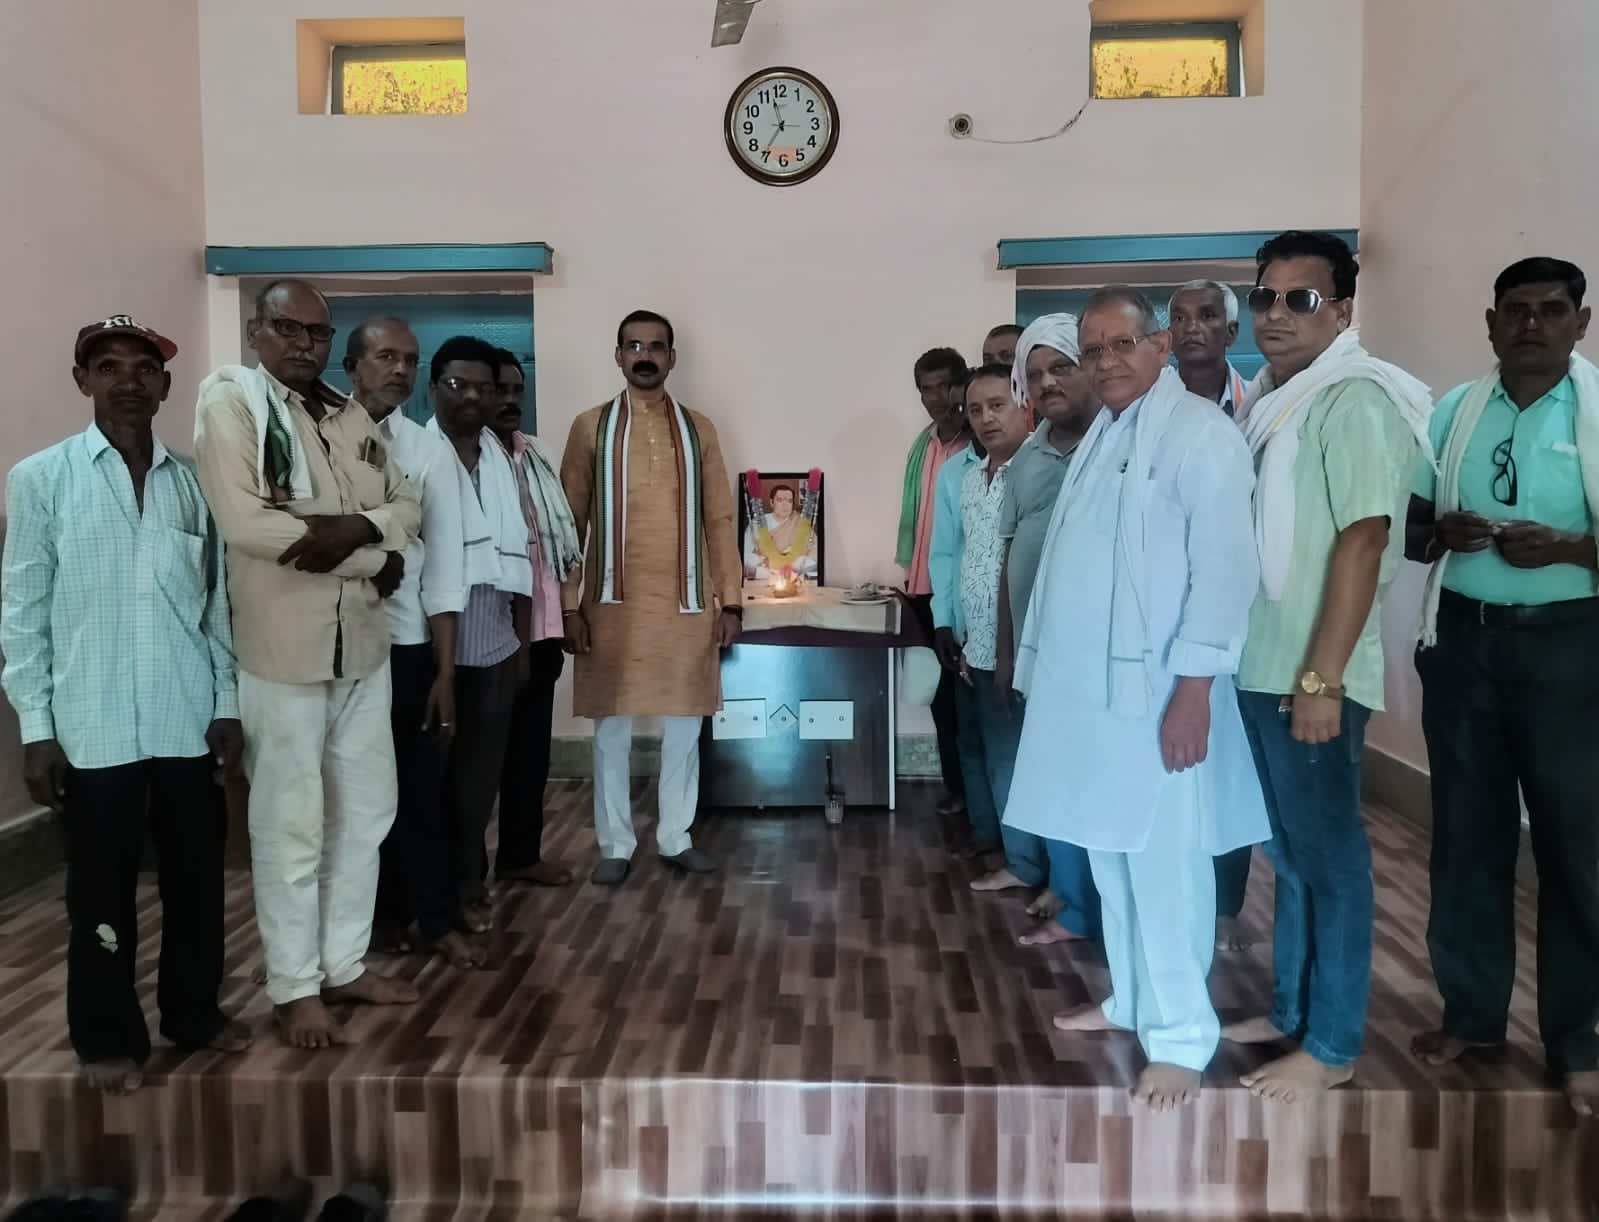 विधायक कार्यालय अर्जुंदा में मनाई गई स्व राजीव गांधीजी की 33 वी पुण्यतिथि